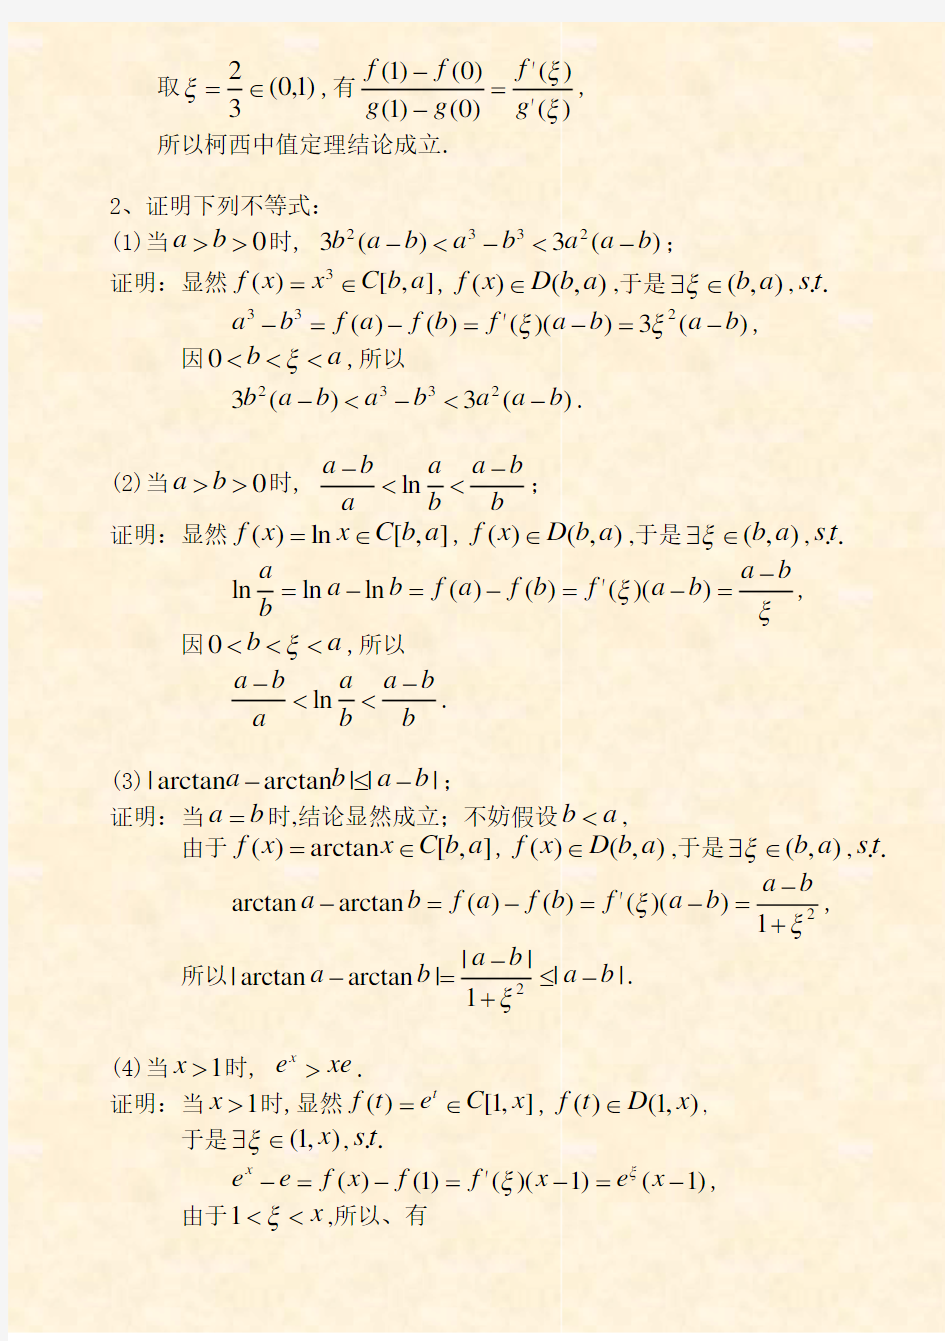 高等数学 中值定理与导数的应用(习题)